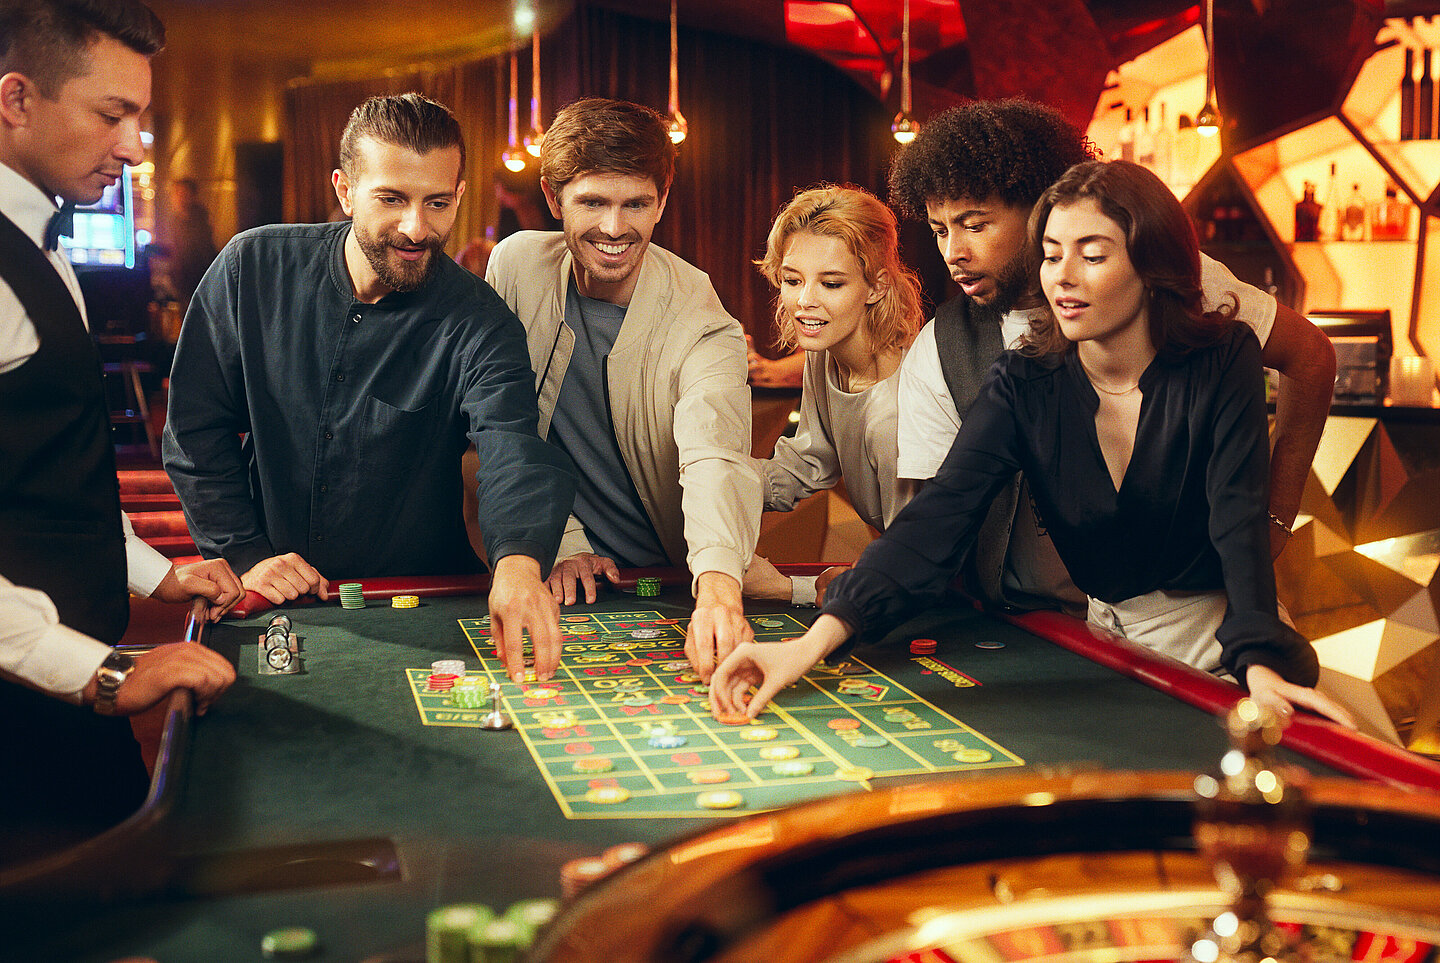 Casino Gäste spielen am Roulette-Tisch